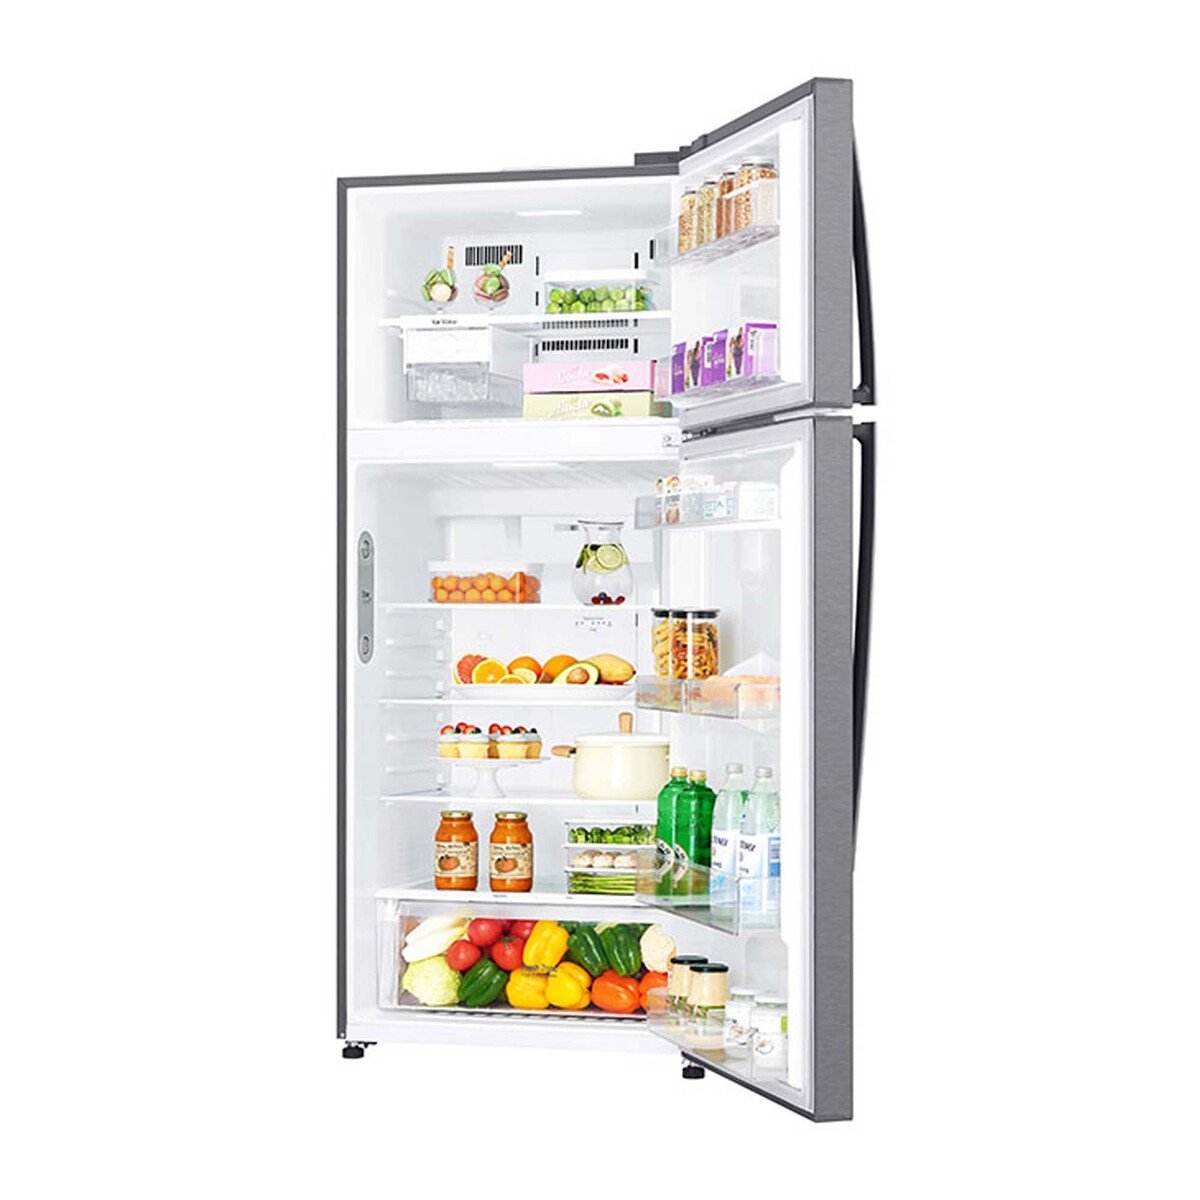 LG Double Door Refrigerator GNC782HQCU 509LTR, Inverter Linear Compressor, Door Cooling™, Multi AirFlow